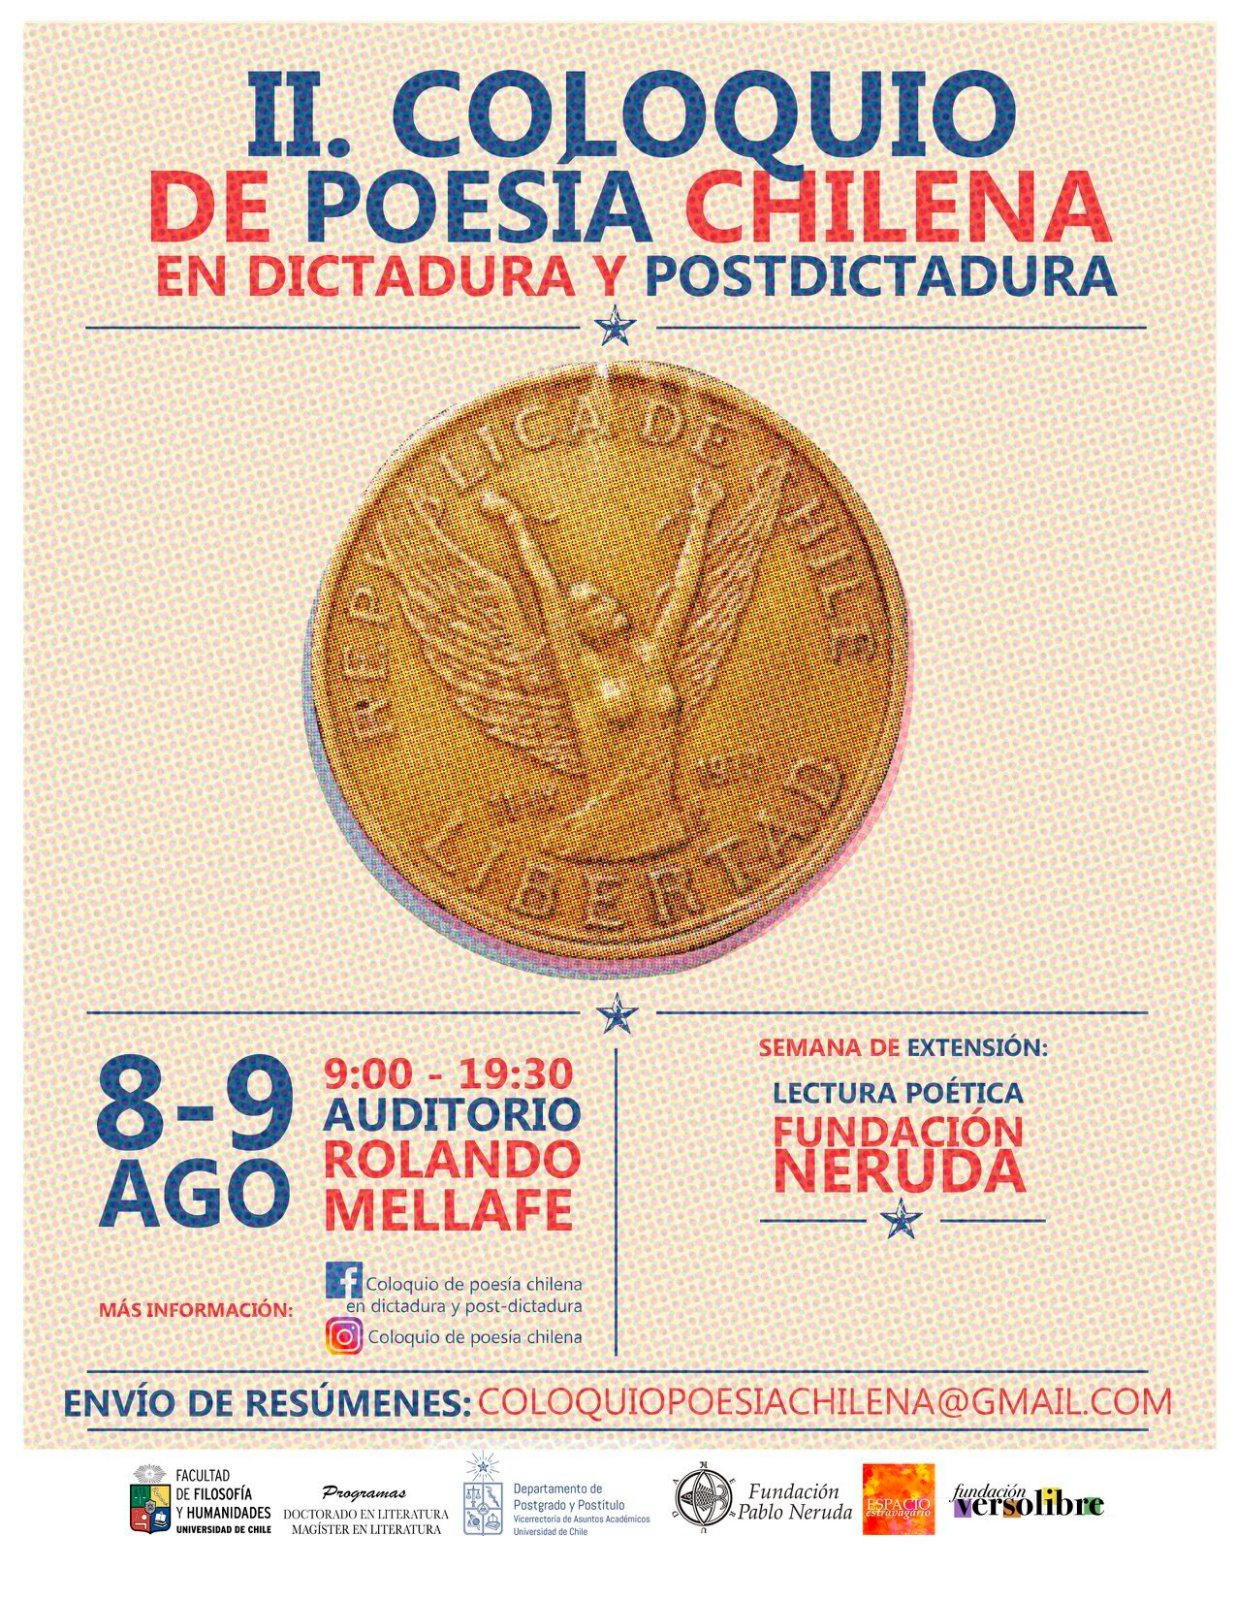 Fundación Versolibre participa en el II Coloquio de Poesía Chilena en Dictadura y Postdictadura